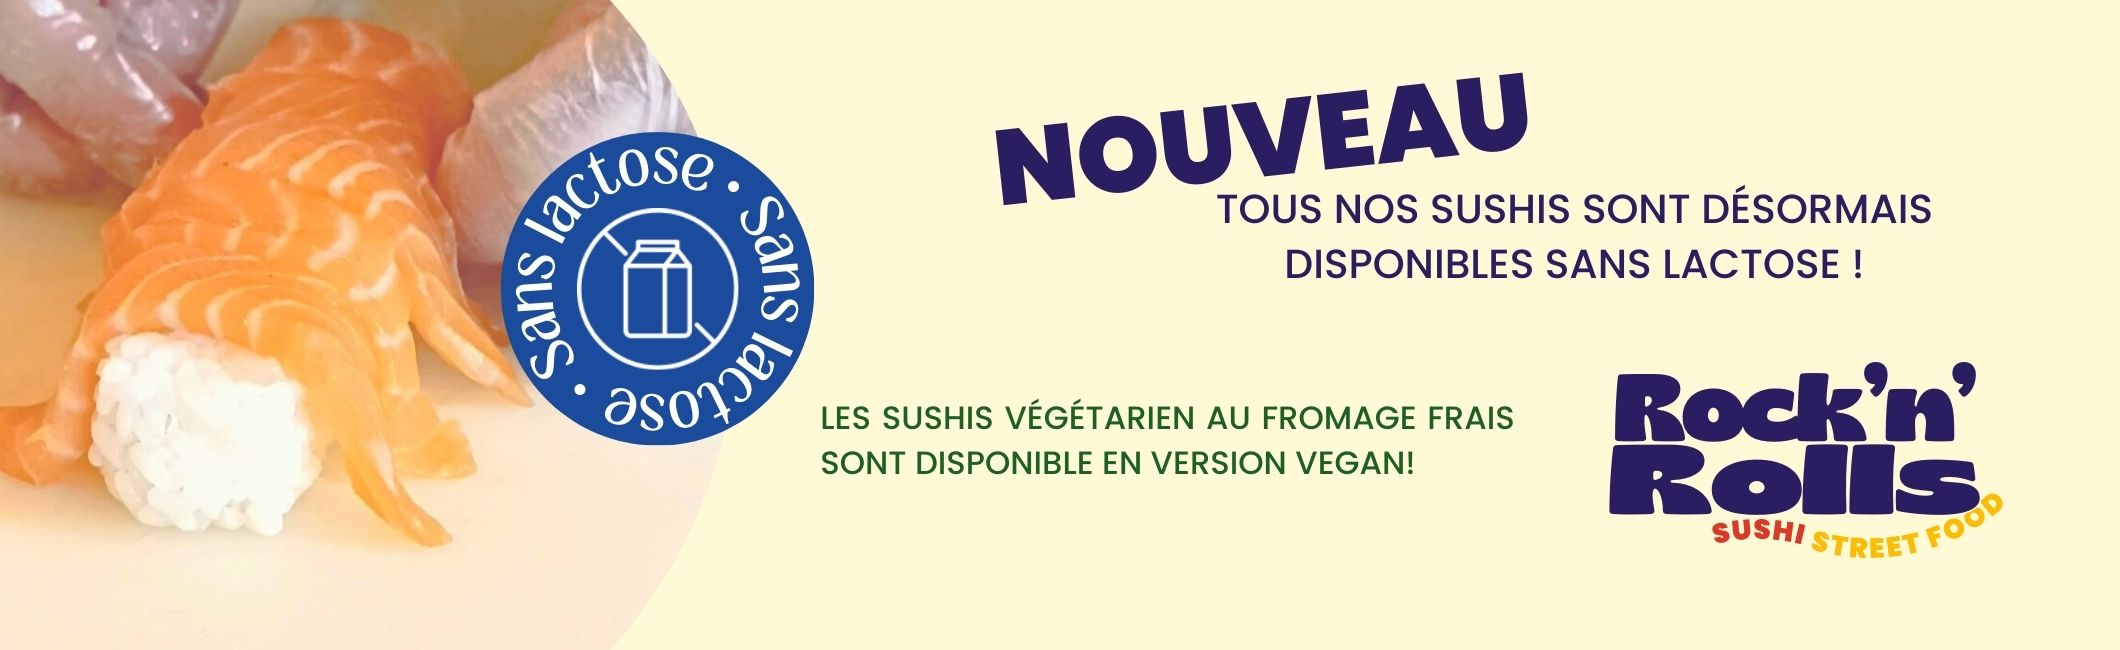 Nouveau tous nos sushis sont desormais disponibles sans lactose ! Les sushis vegetarien au fromage frais sont disponible en version vegan!